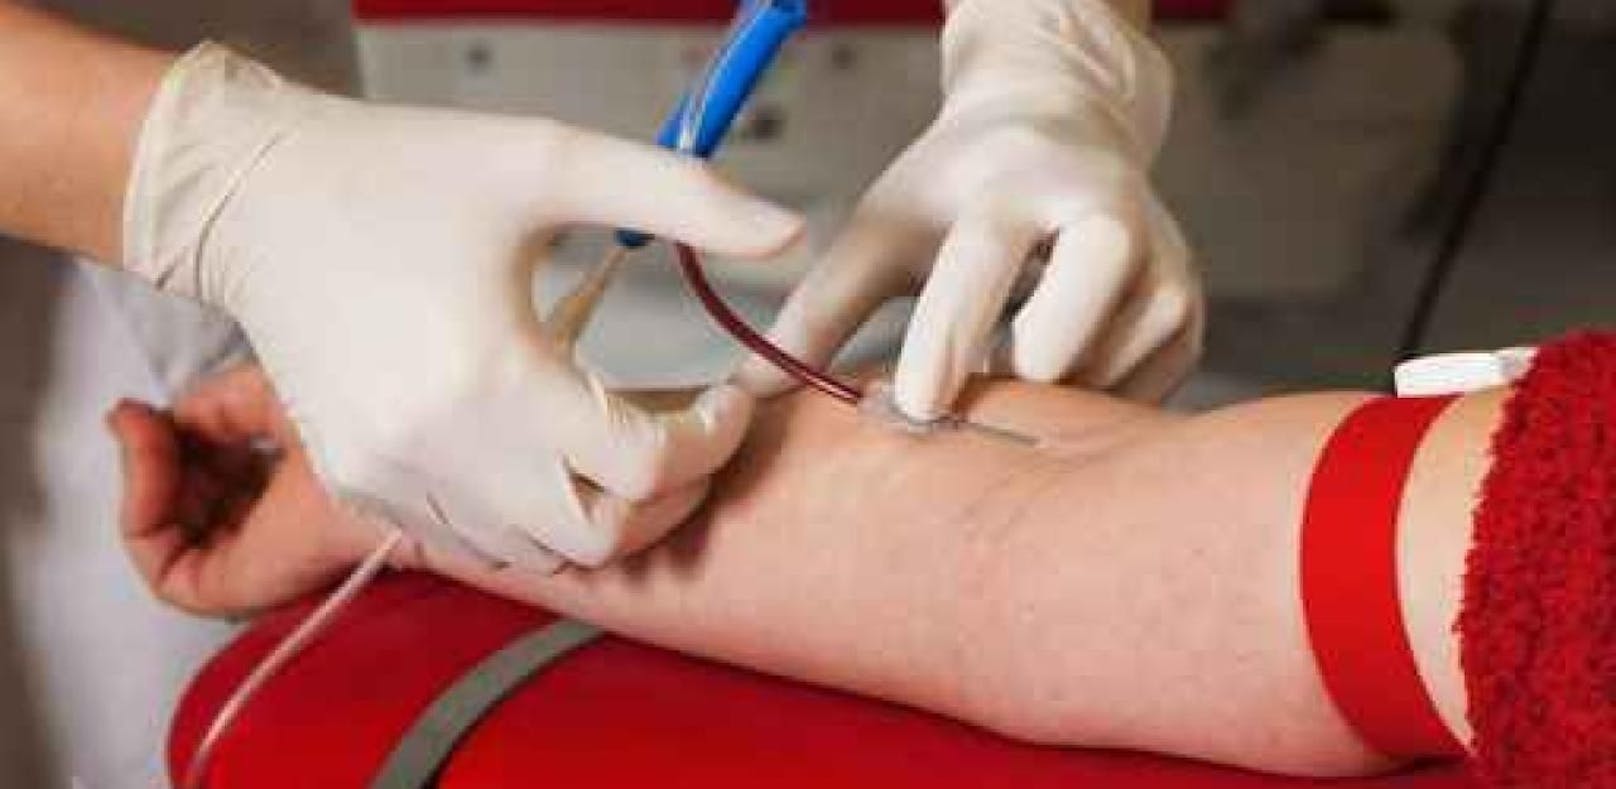 Sexverbot für schwule Blutspender gilt weiterhin